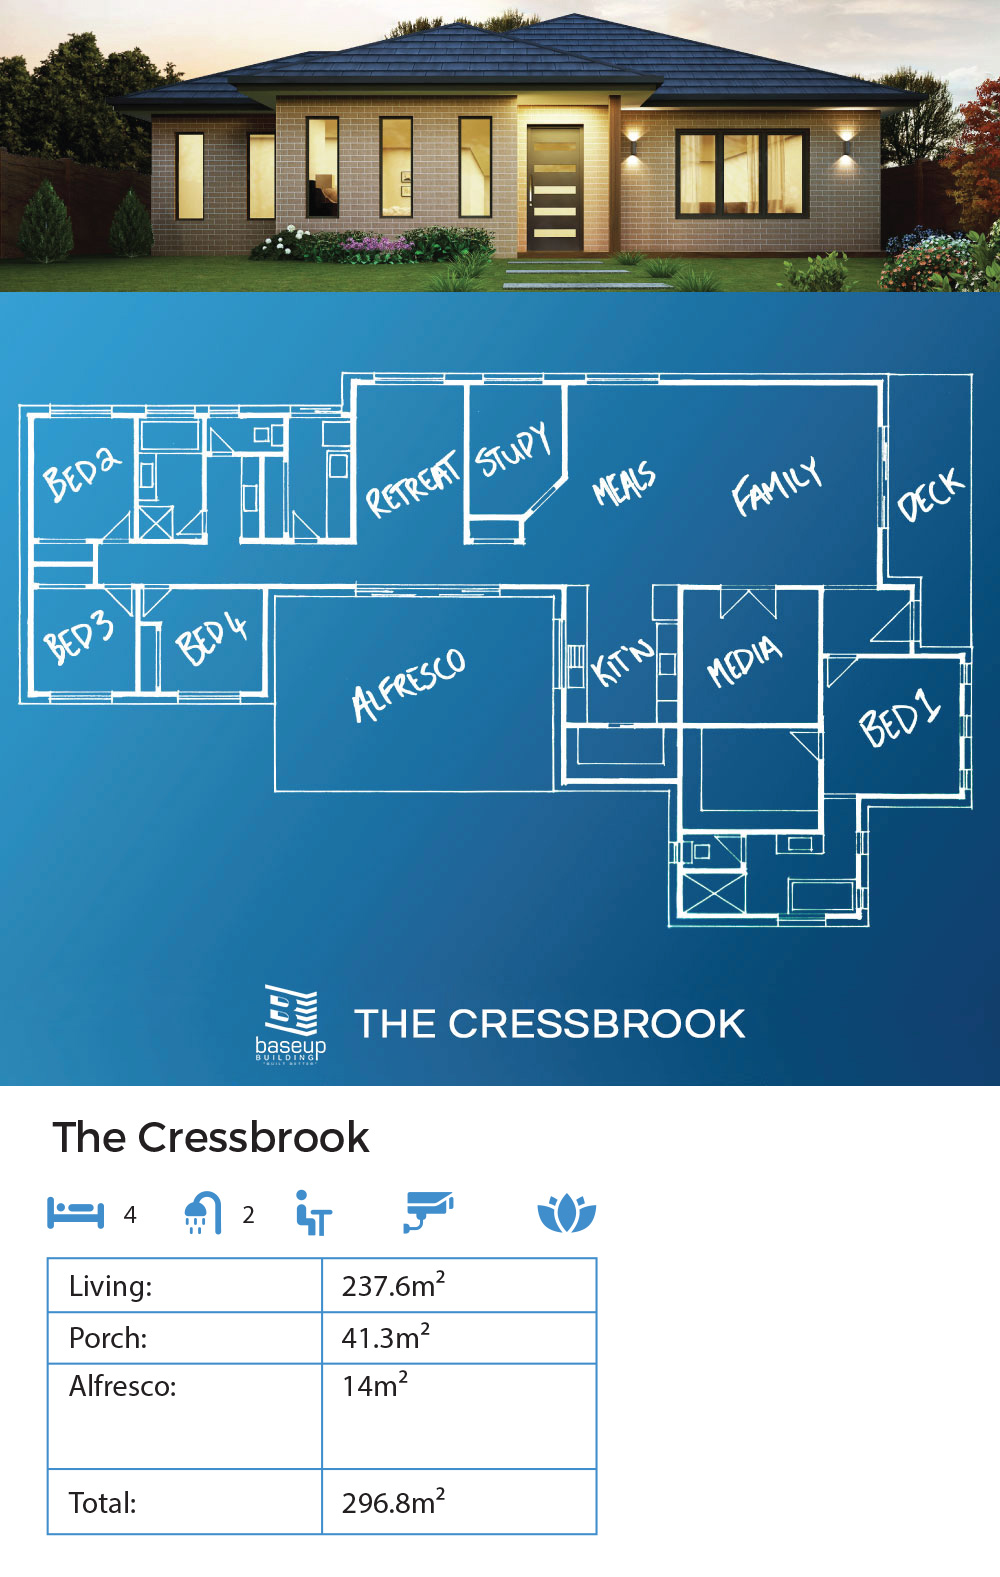 The Cressbrook